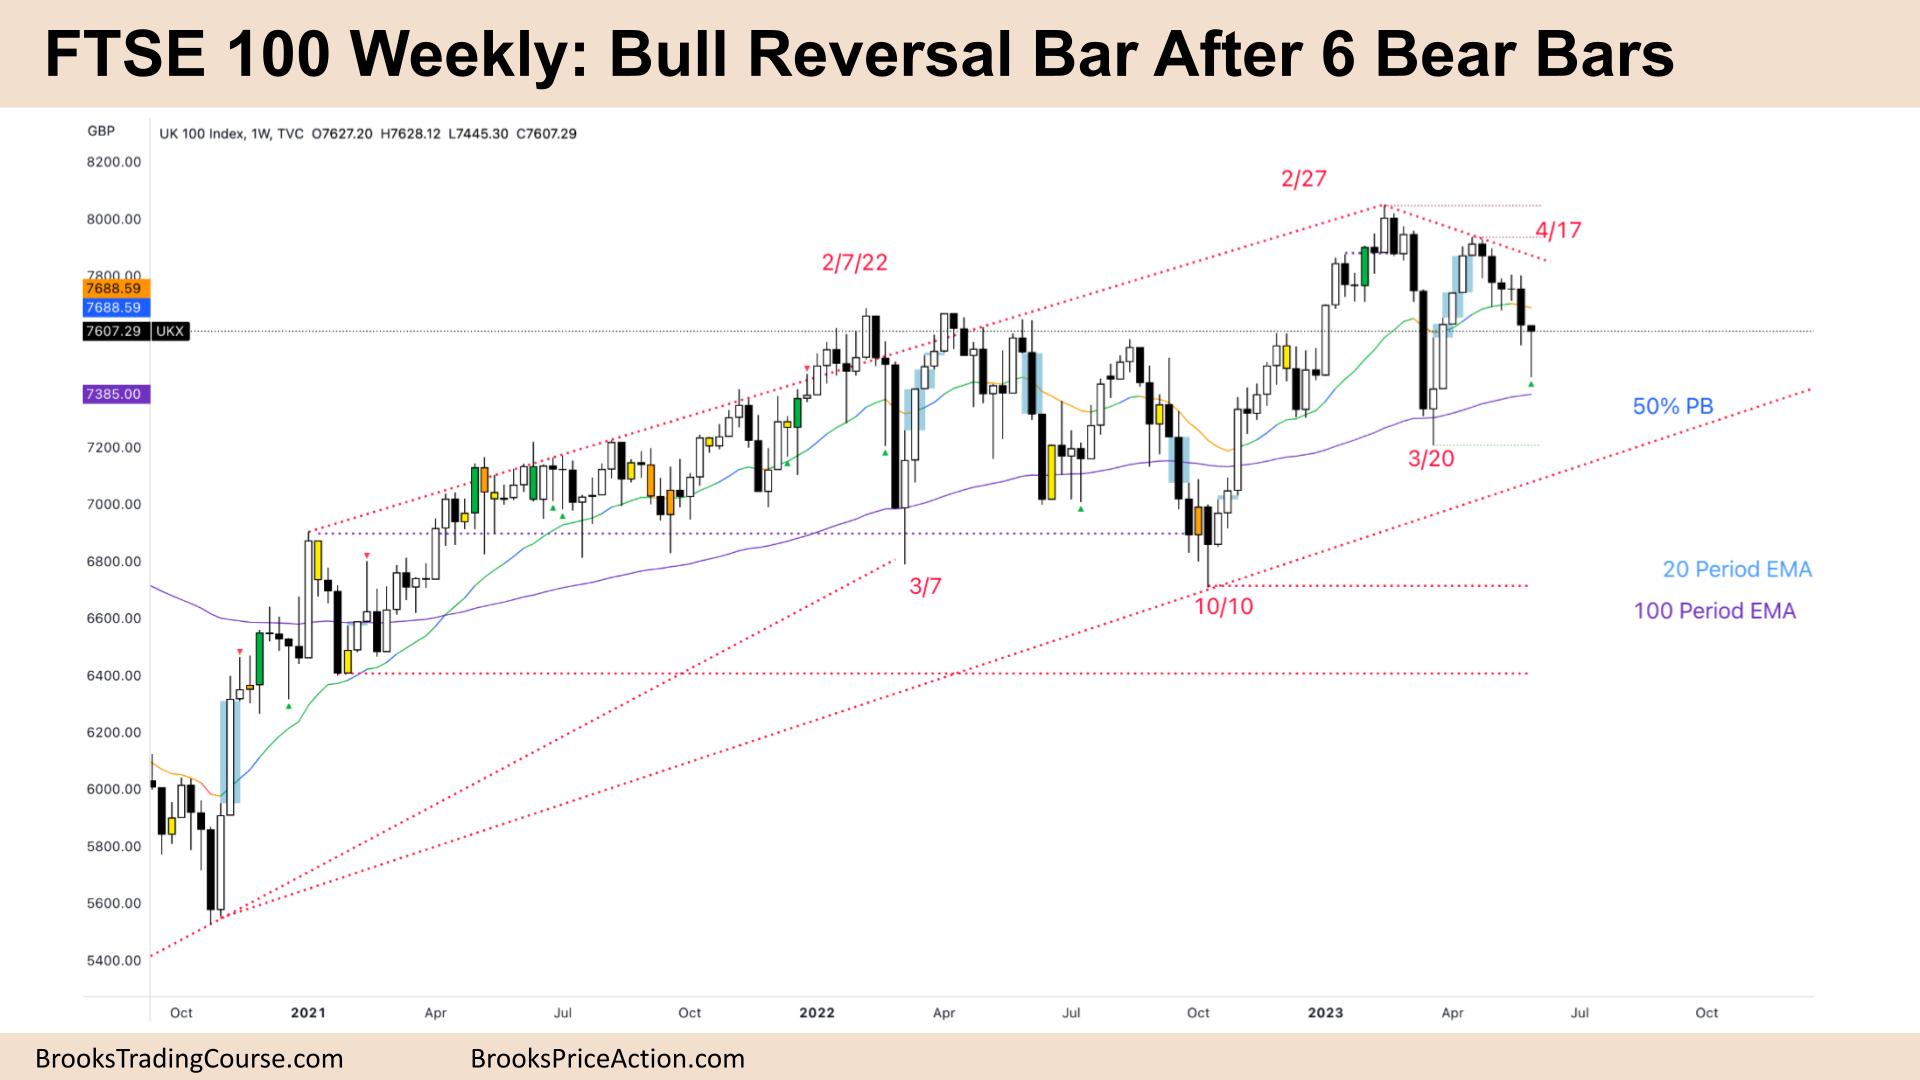 FTSE 100 Bull Reversal Bar After 6 Bear Bars